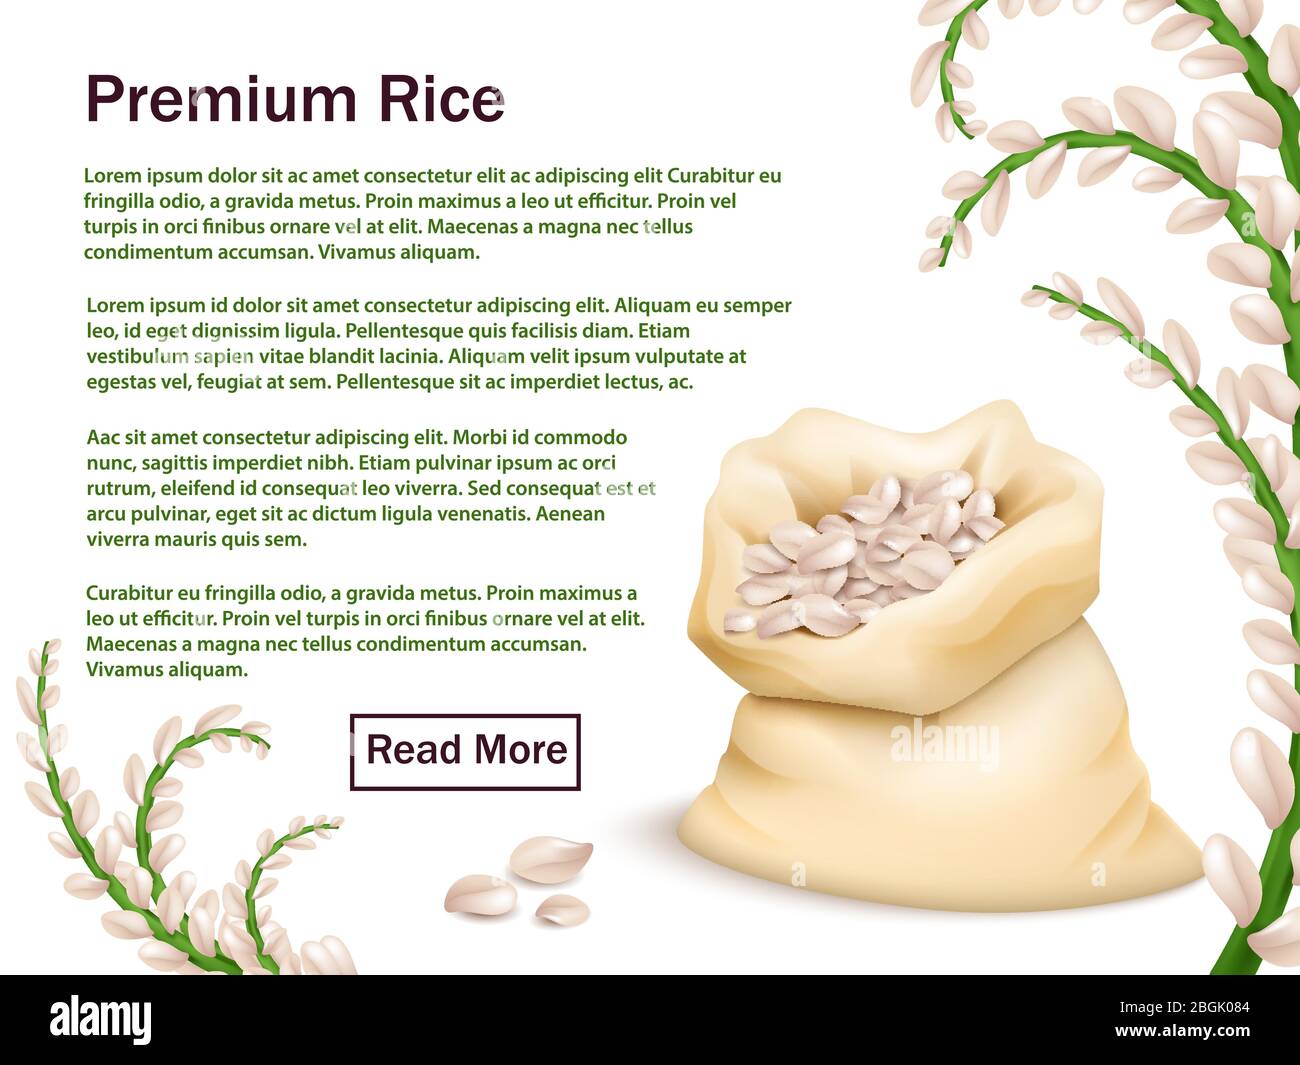 Riso realistico, grani e orecchie isolati su sfondo bianco. Illustrazione del modello di sfondo Web vettoriale per riso Premium Illustrazione Vettoriale